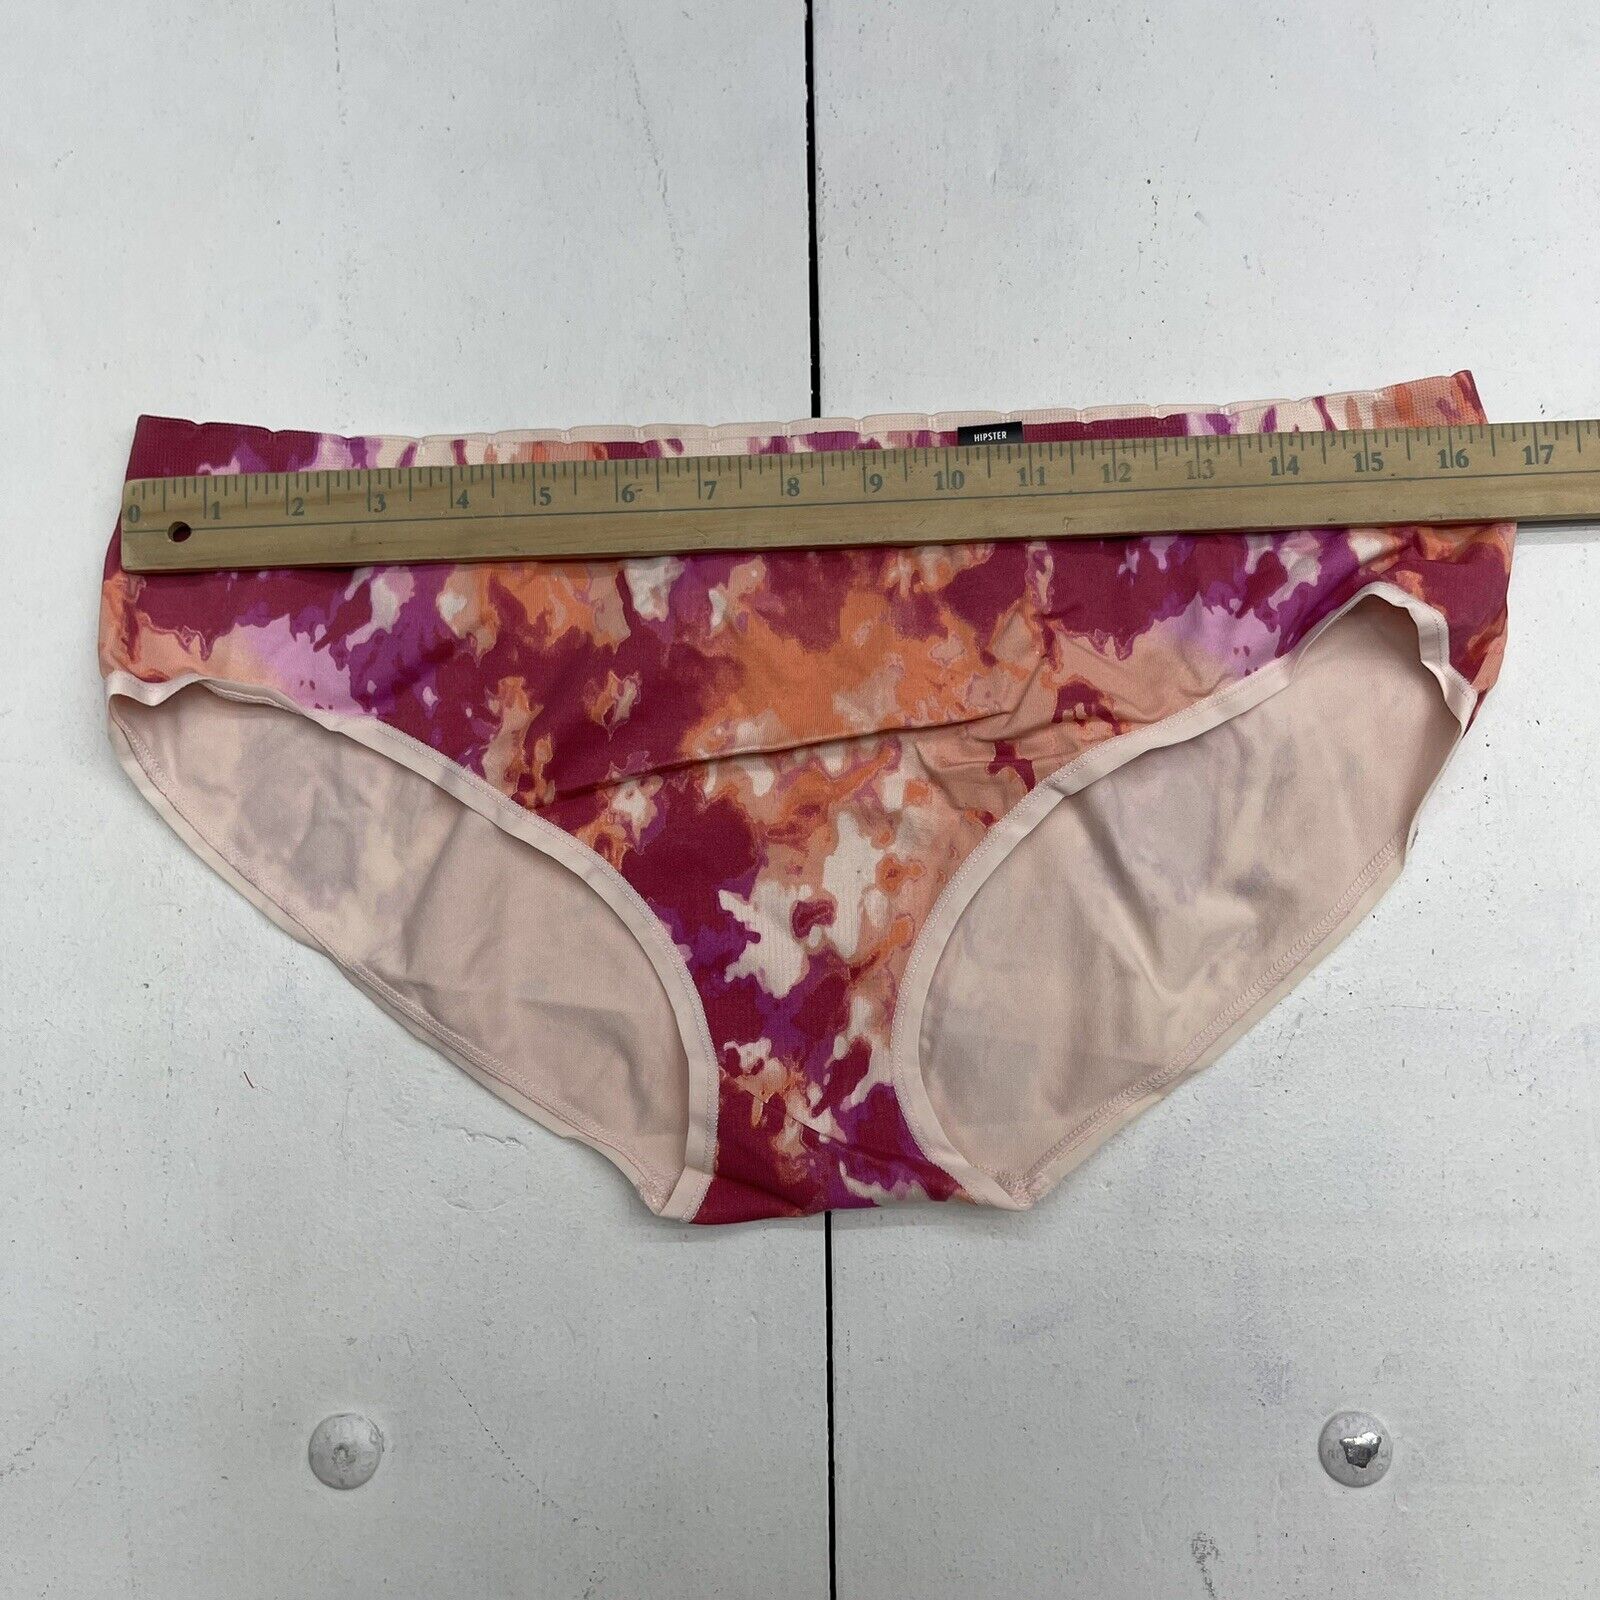 Gap Body Beige Lace Hipster Underwear Women's Size Medium NEW